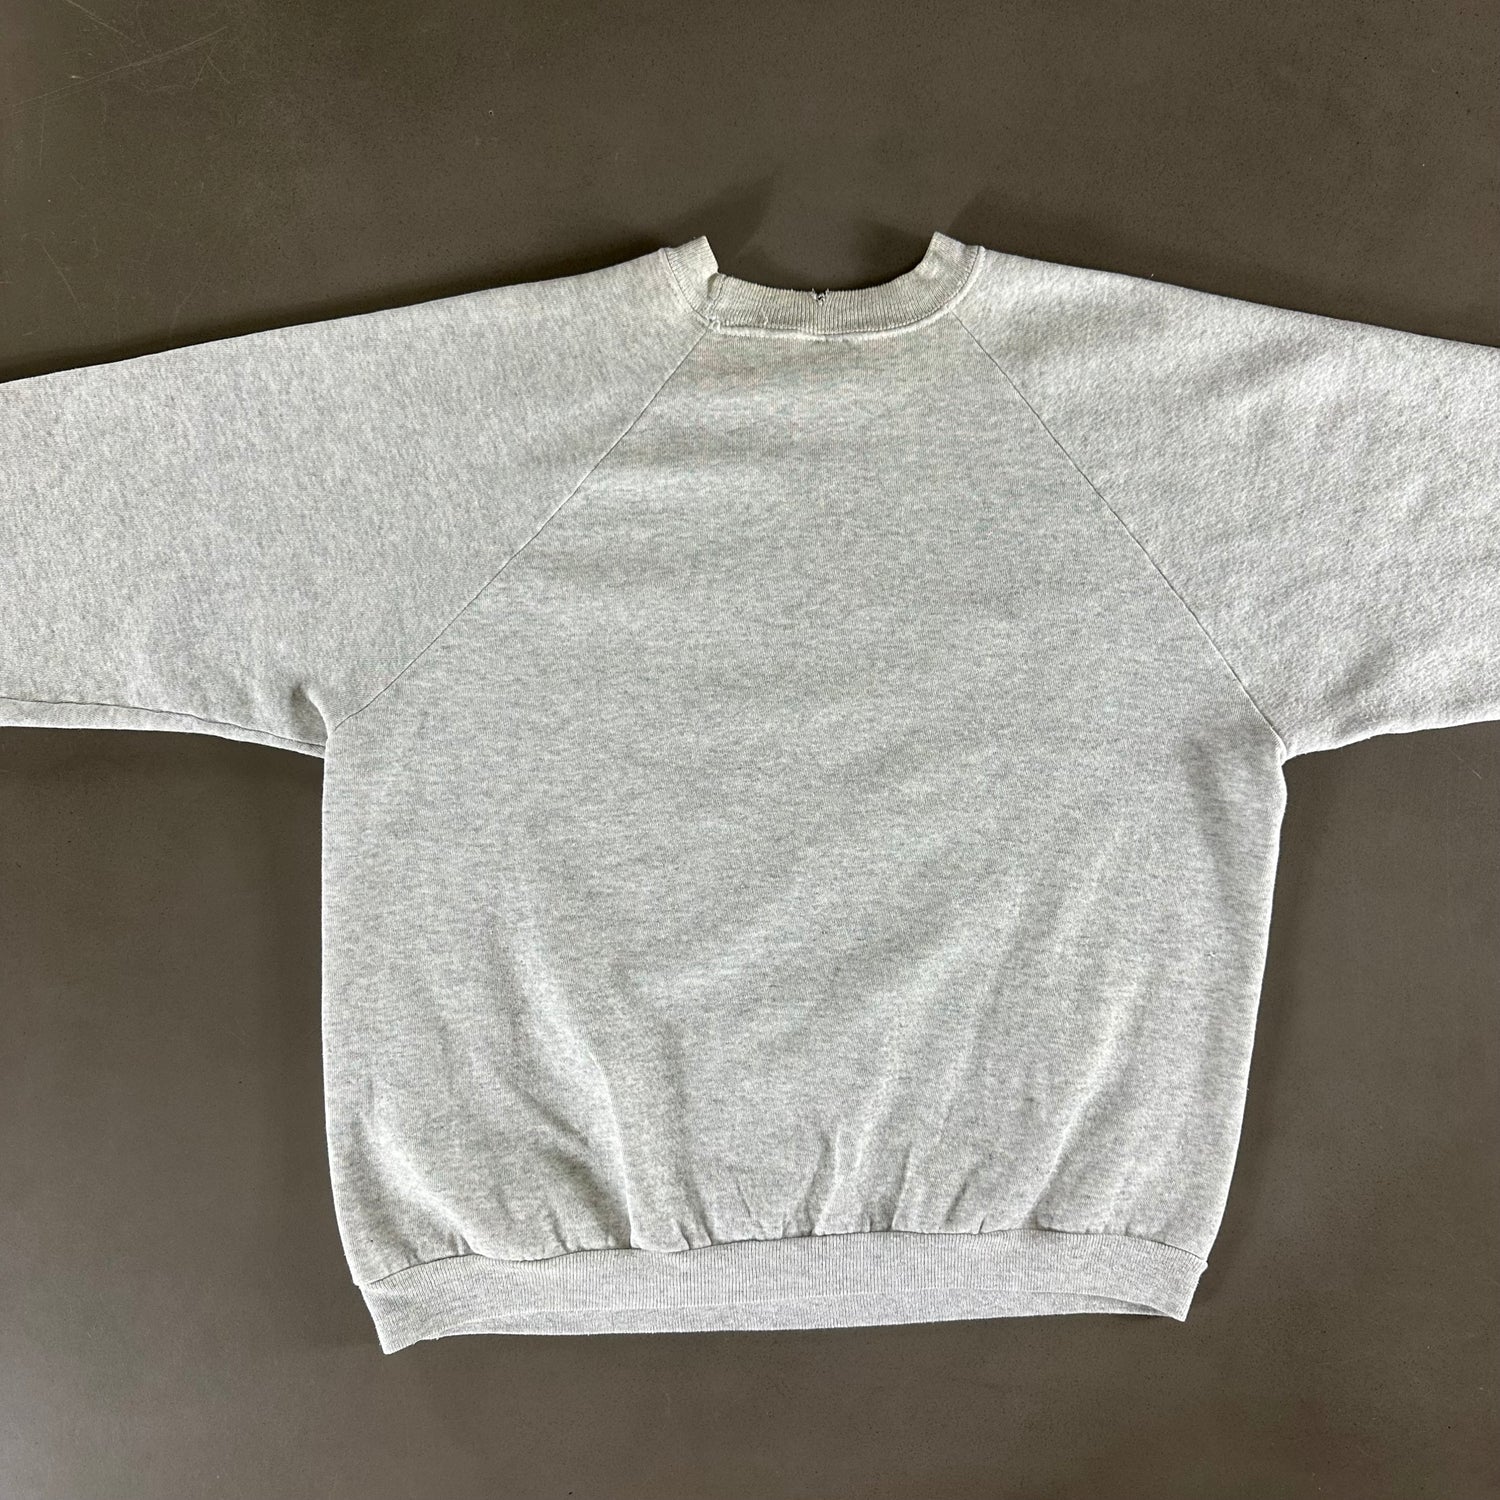 Vintage 1992 Connecticut Sweatshirt size XL